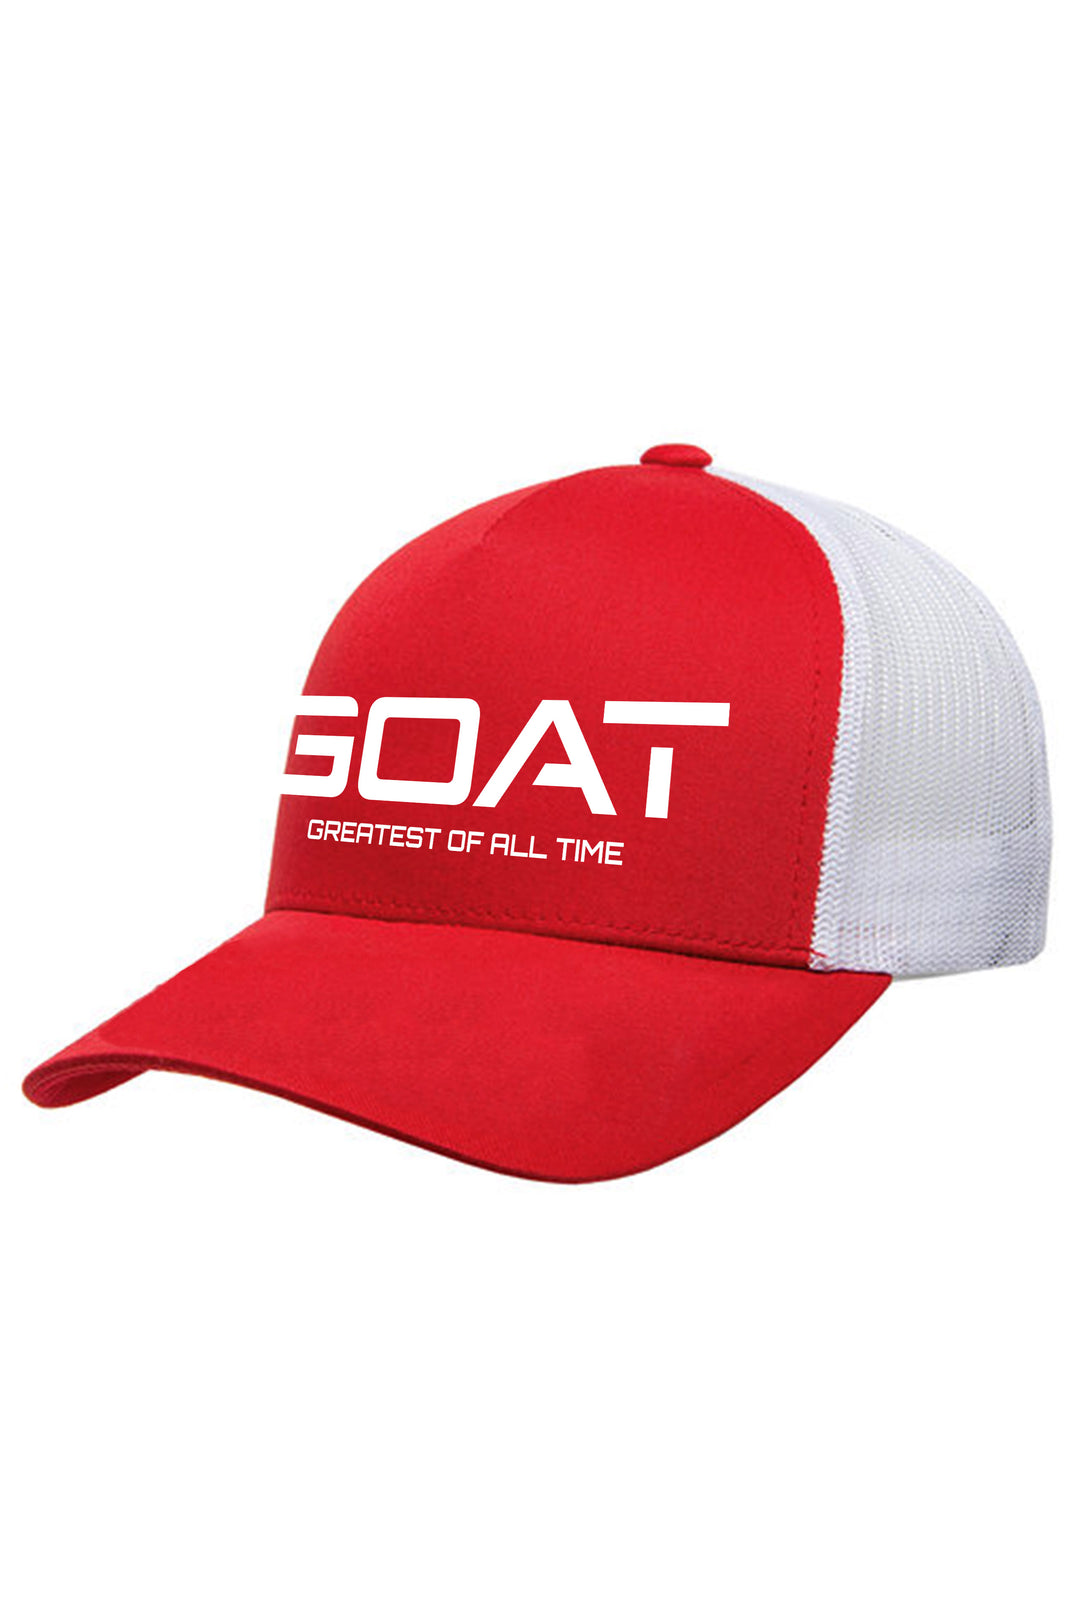 Goat V2 Retro Trucker Hat (White Logo) - Zamage